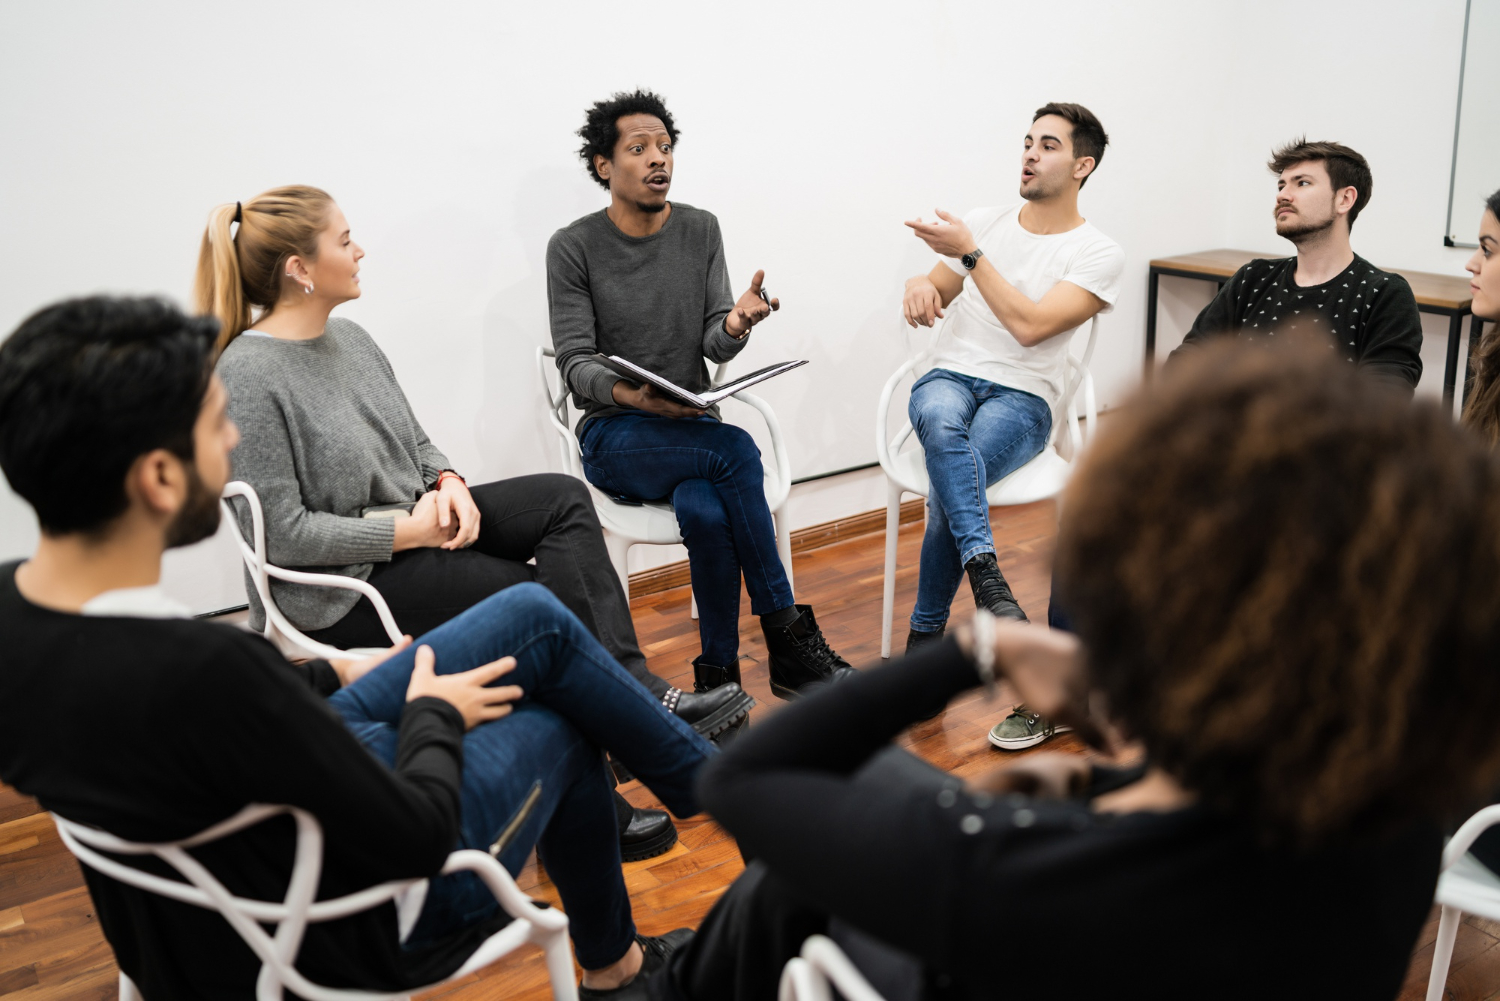 A imagem mostra um grupo de pessoas sentadas em cadeiras posicionadas em formato de um círculo. Essas pessoas parecem estar discutindo assuntos importantes em uma reunião de trabalho.  